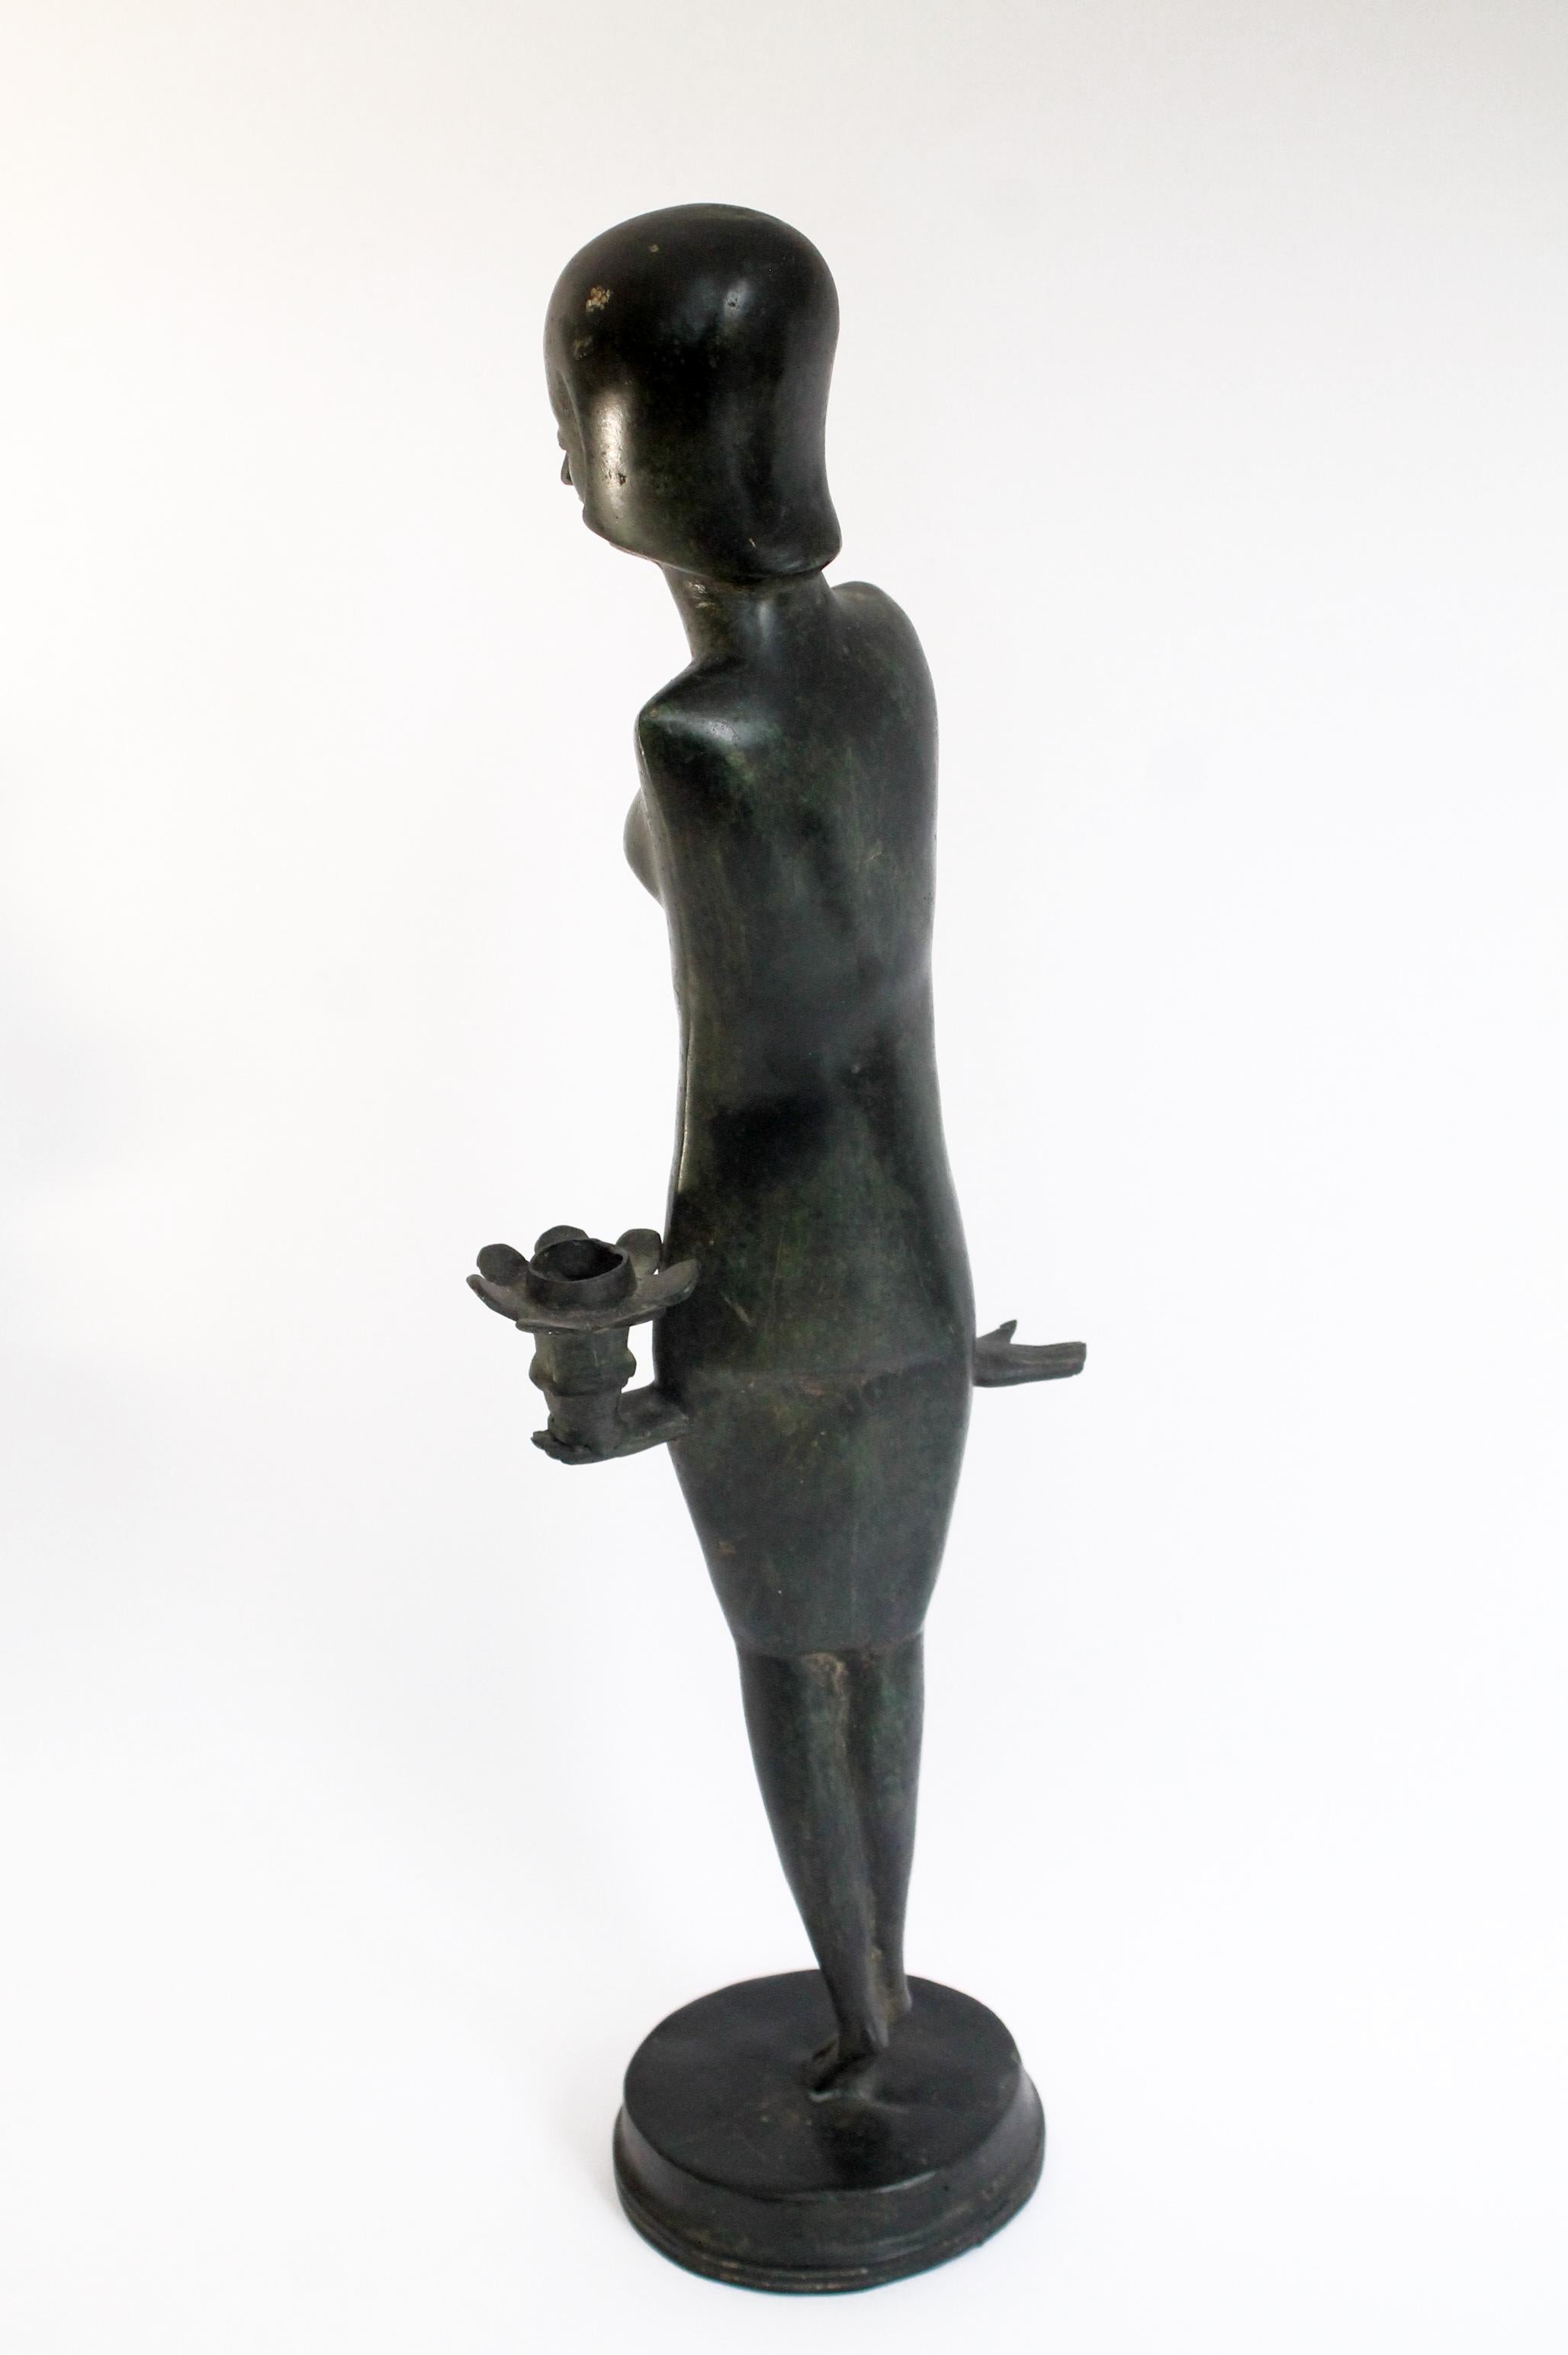 Bronze italien sculpture de femme moderne du milieu du siècle
Cette étude a été attribuée au célèbre peintre/sculpteur italien Bruno Cassinari. 

Artistics : Attribué à Bruno Cassinari
Étude en bronze d'une femme en pose
Période : vers les années